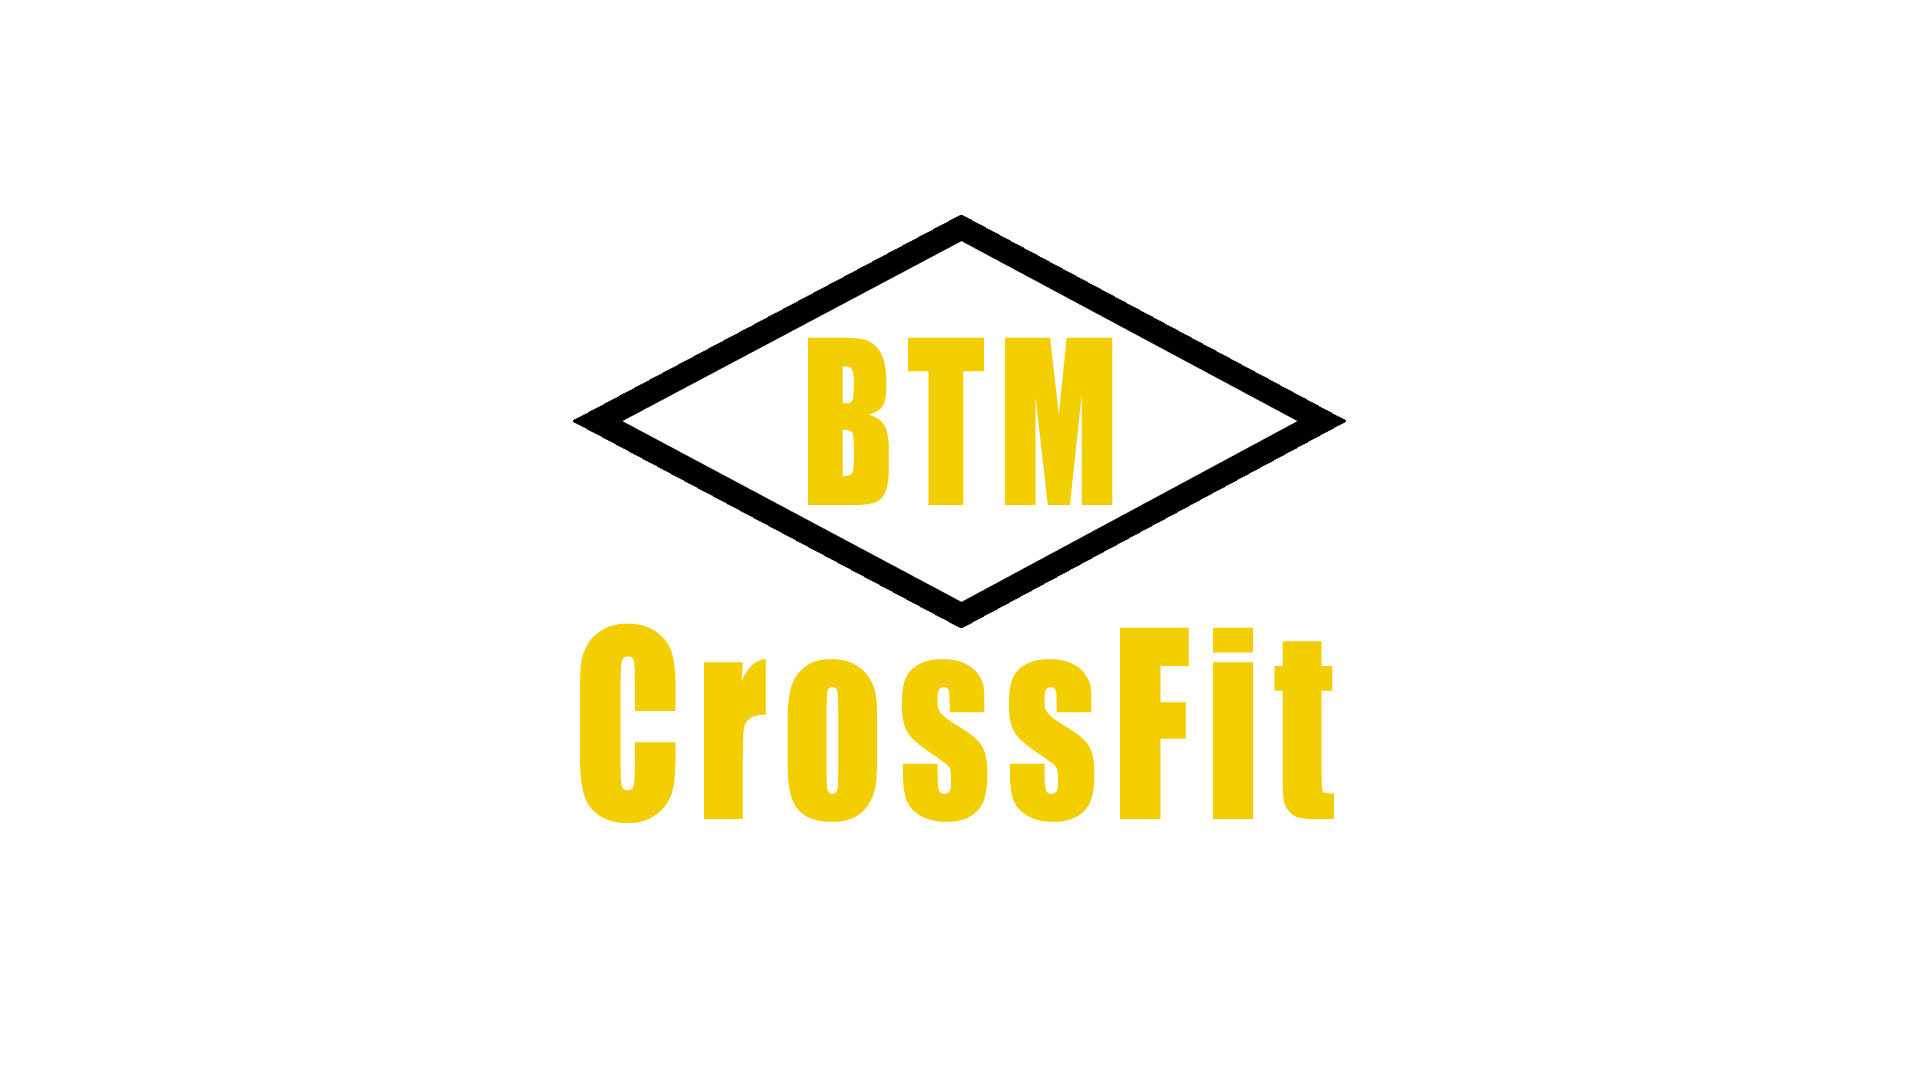 btm crossfit logo